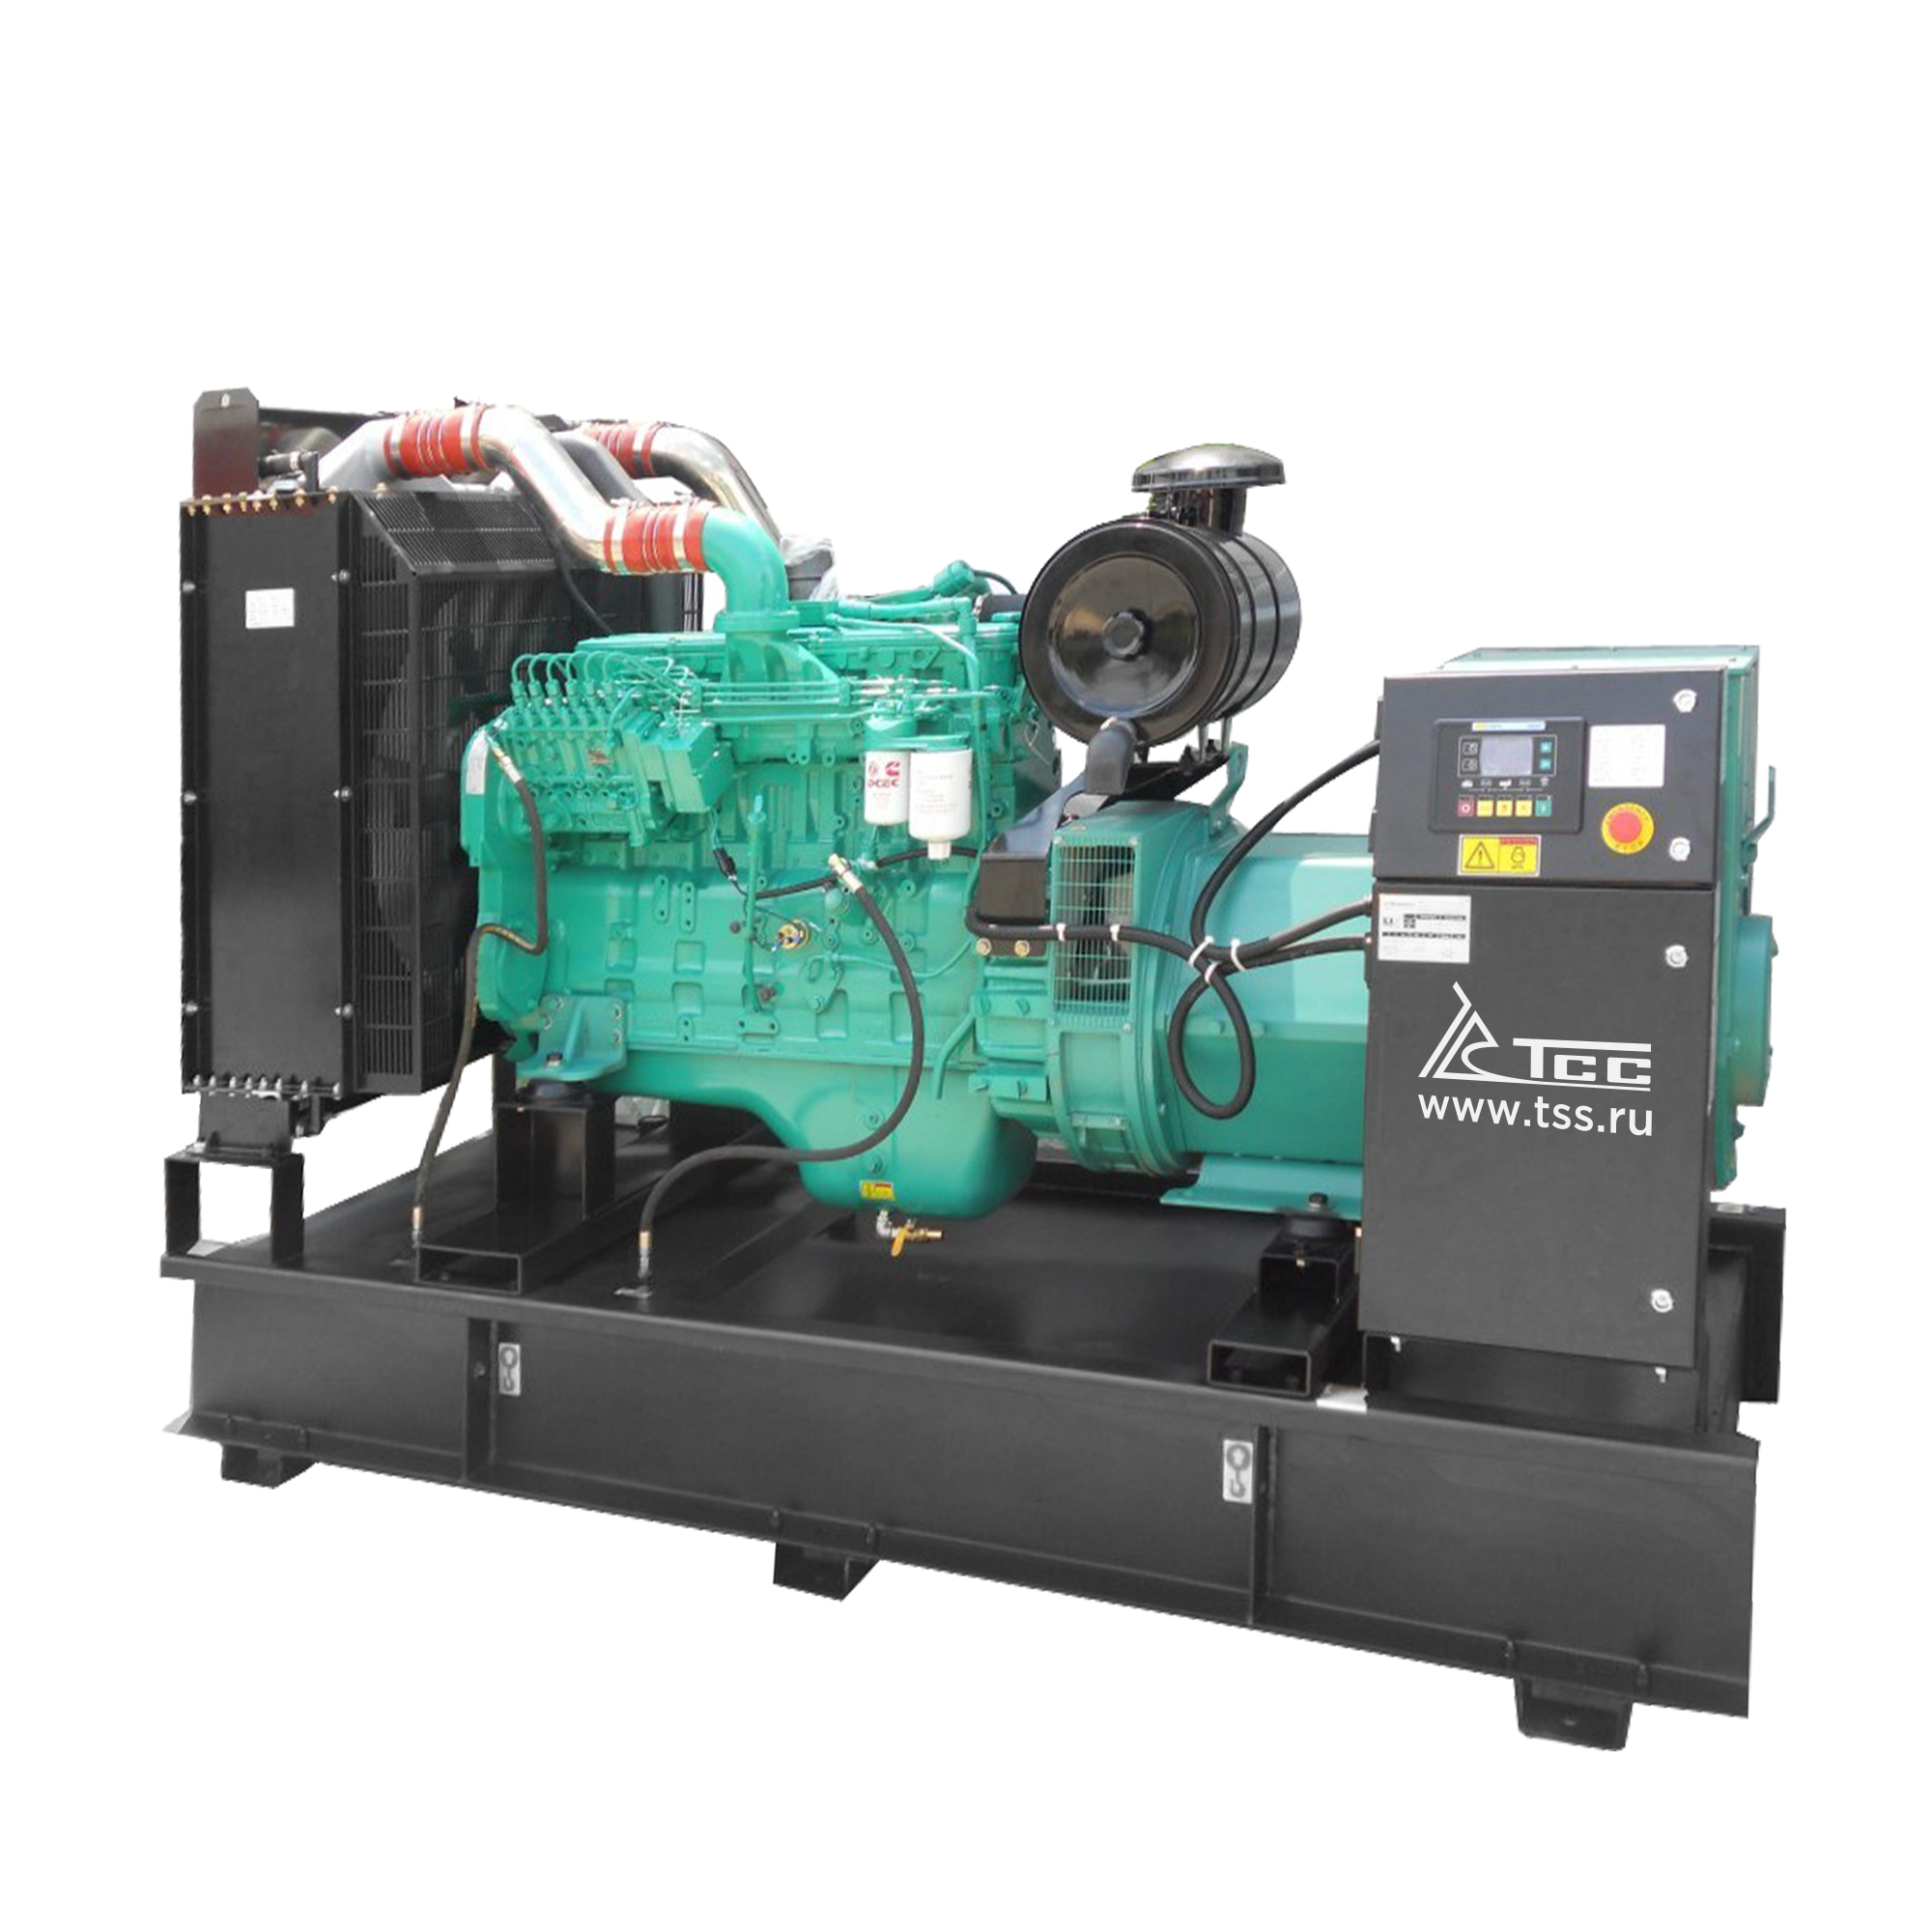 Дизельный генератор ТСС АД-32C-Т400-1РМ15 дизельный генератор тсс ад 1100с т400 1рм15